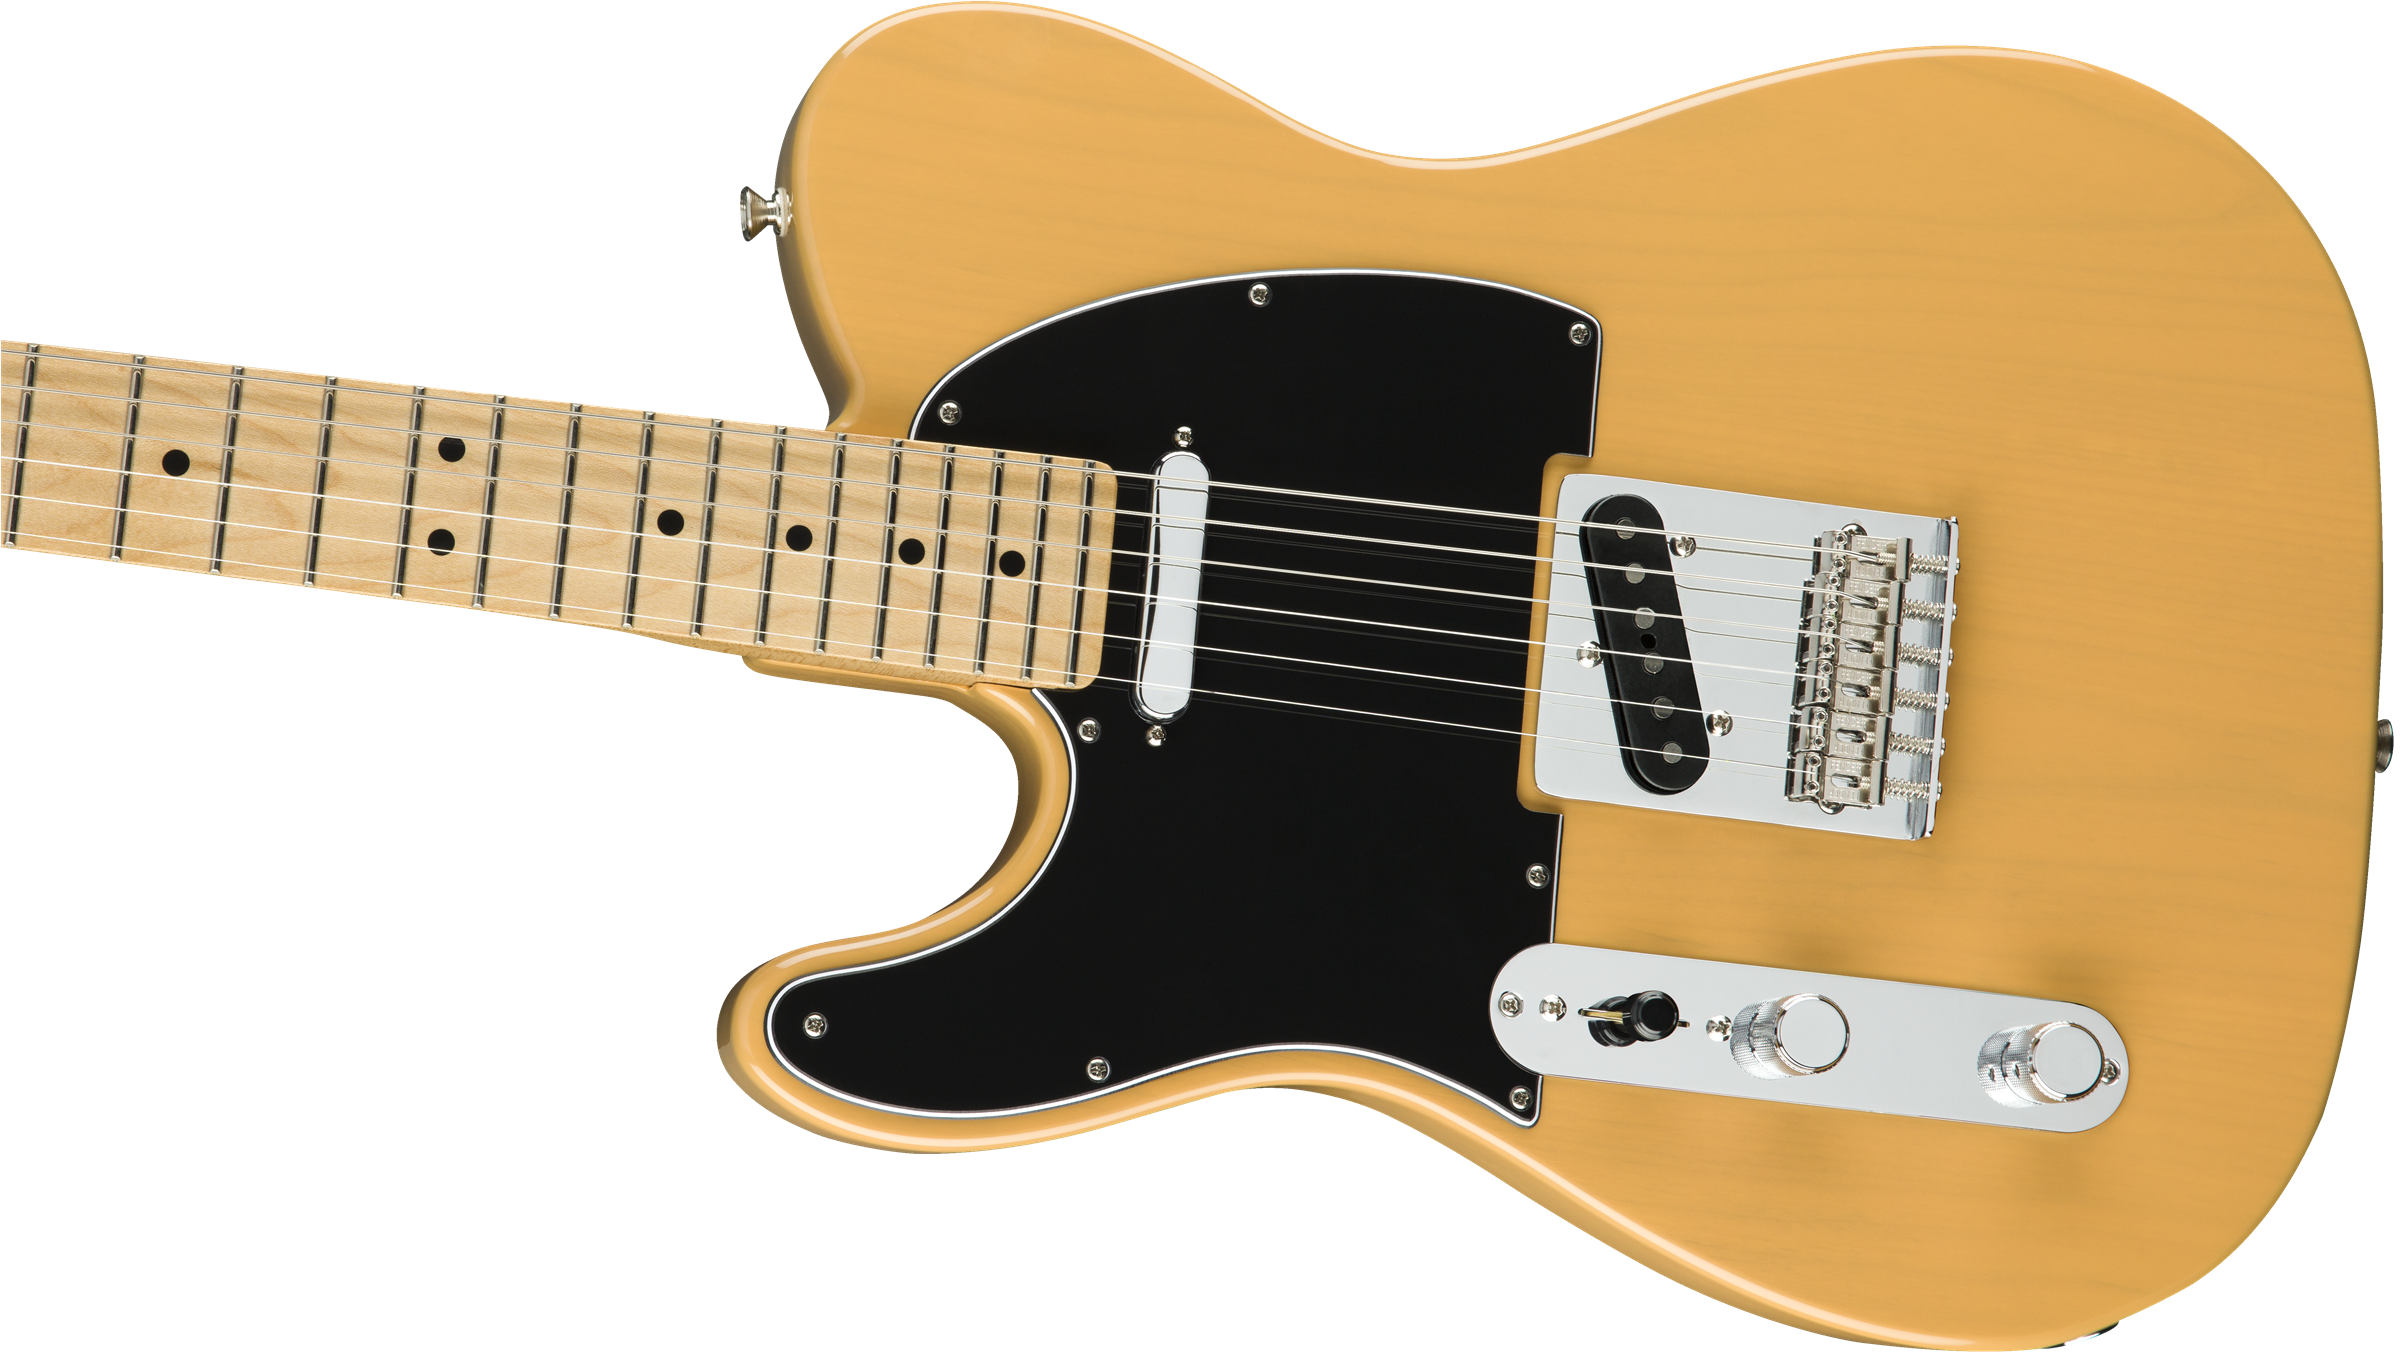 Fender Player Telecaster Left-Handed, Maple Fingerboard, Butterscotch Blonde 0145222550